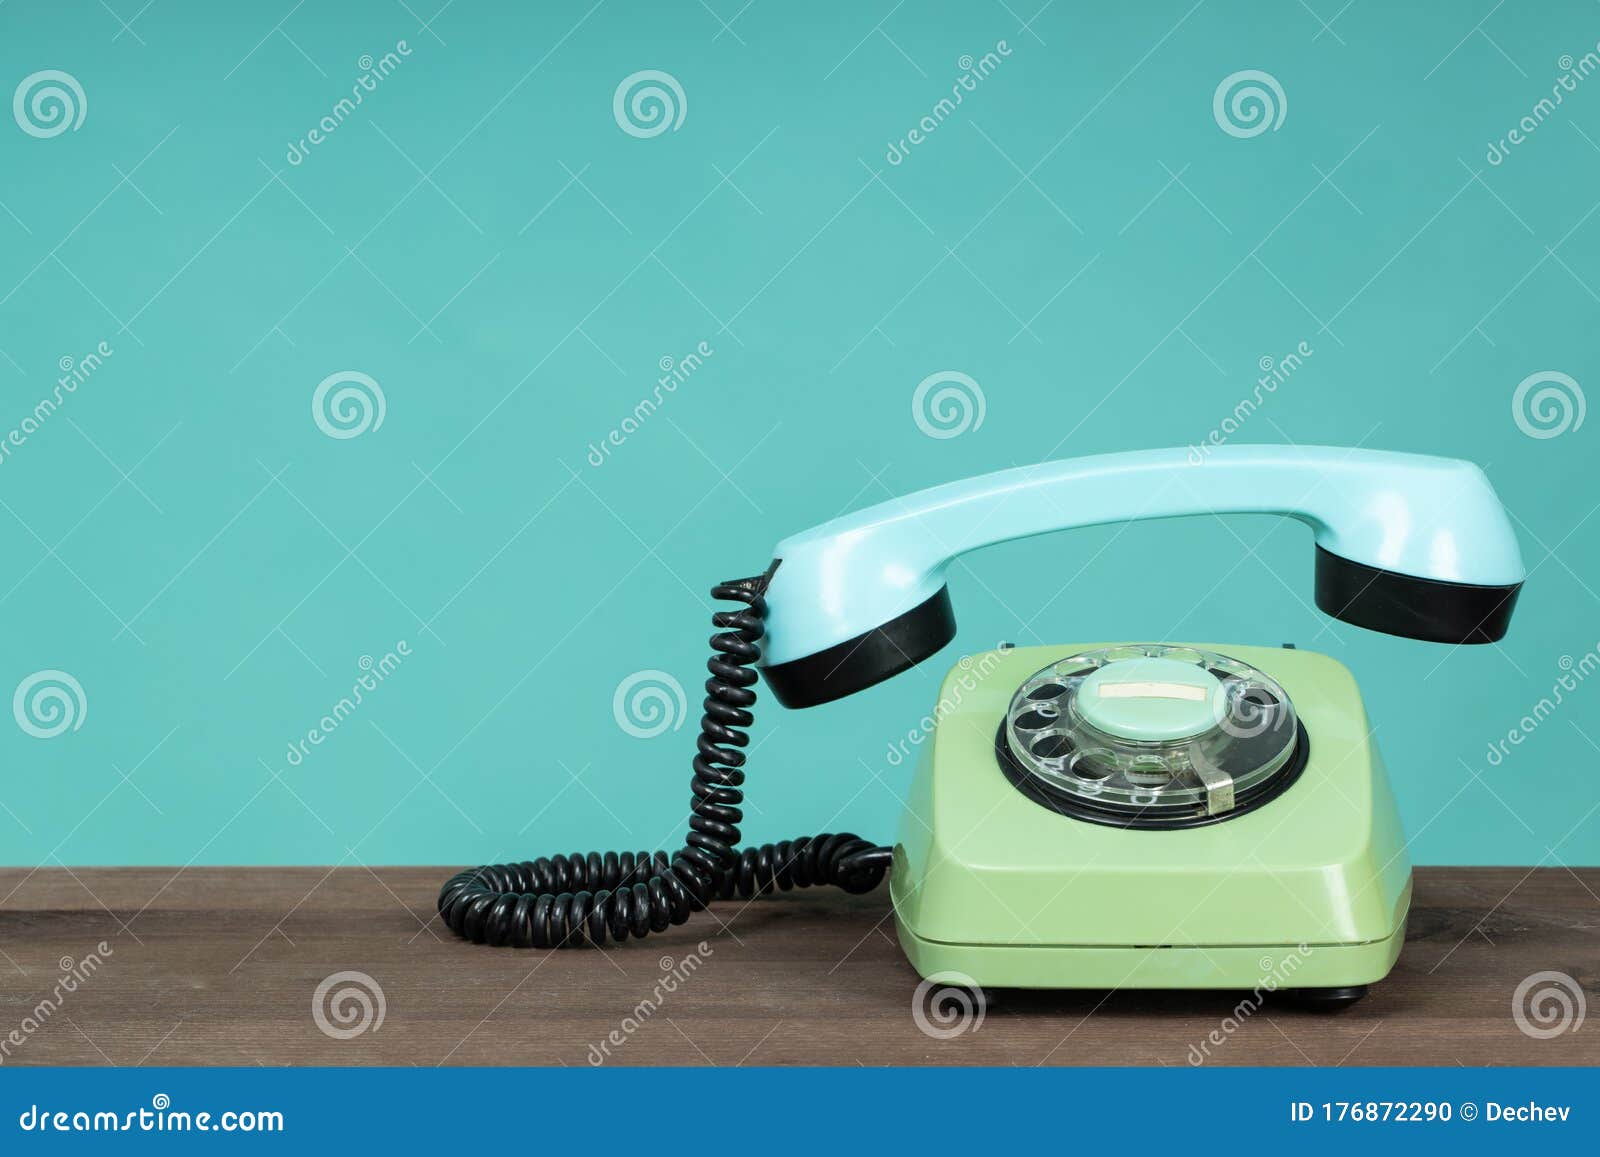 Teléfono vintage de estilo antiguo